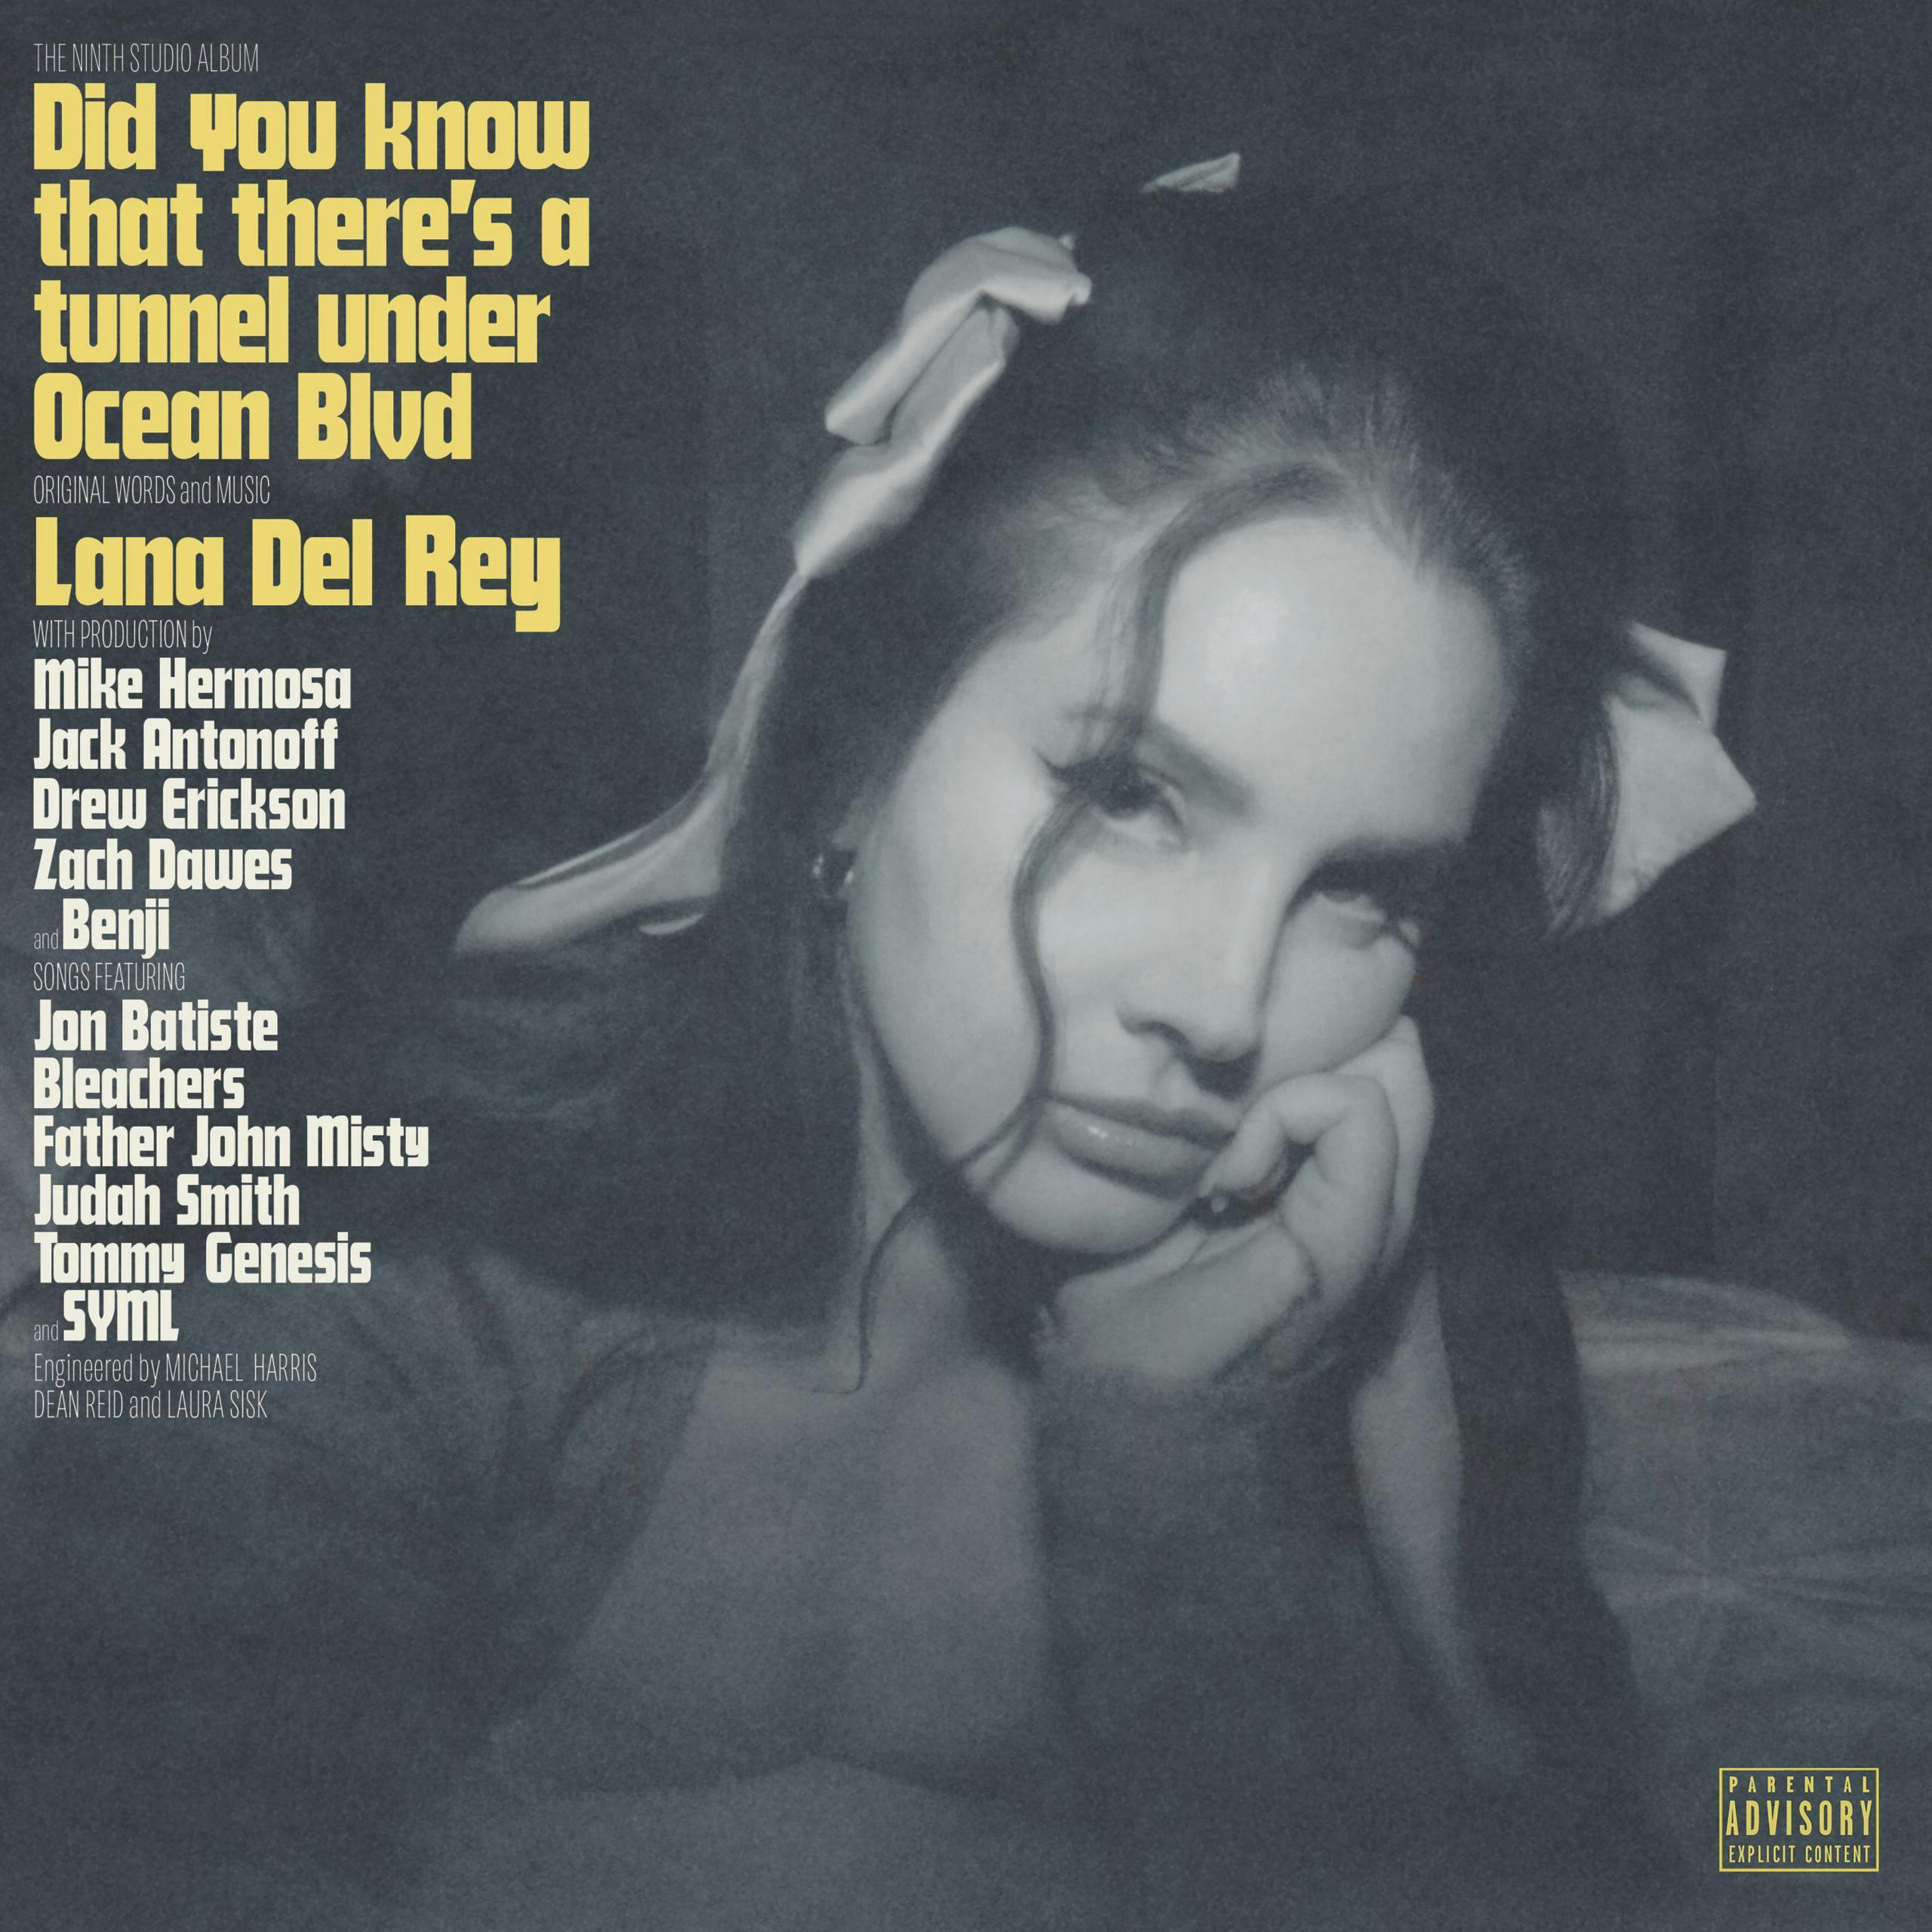 La cover dell'album "Did You Know That There's a Tunnel Under Ocean Blvd" di Lana Del Rey